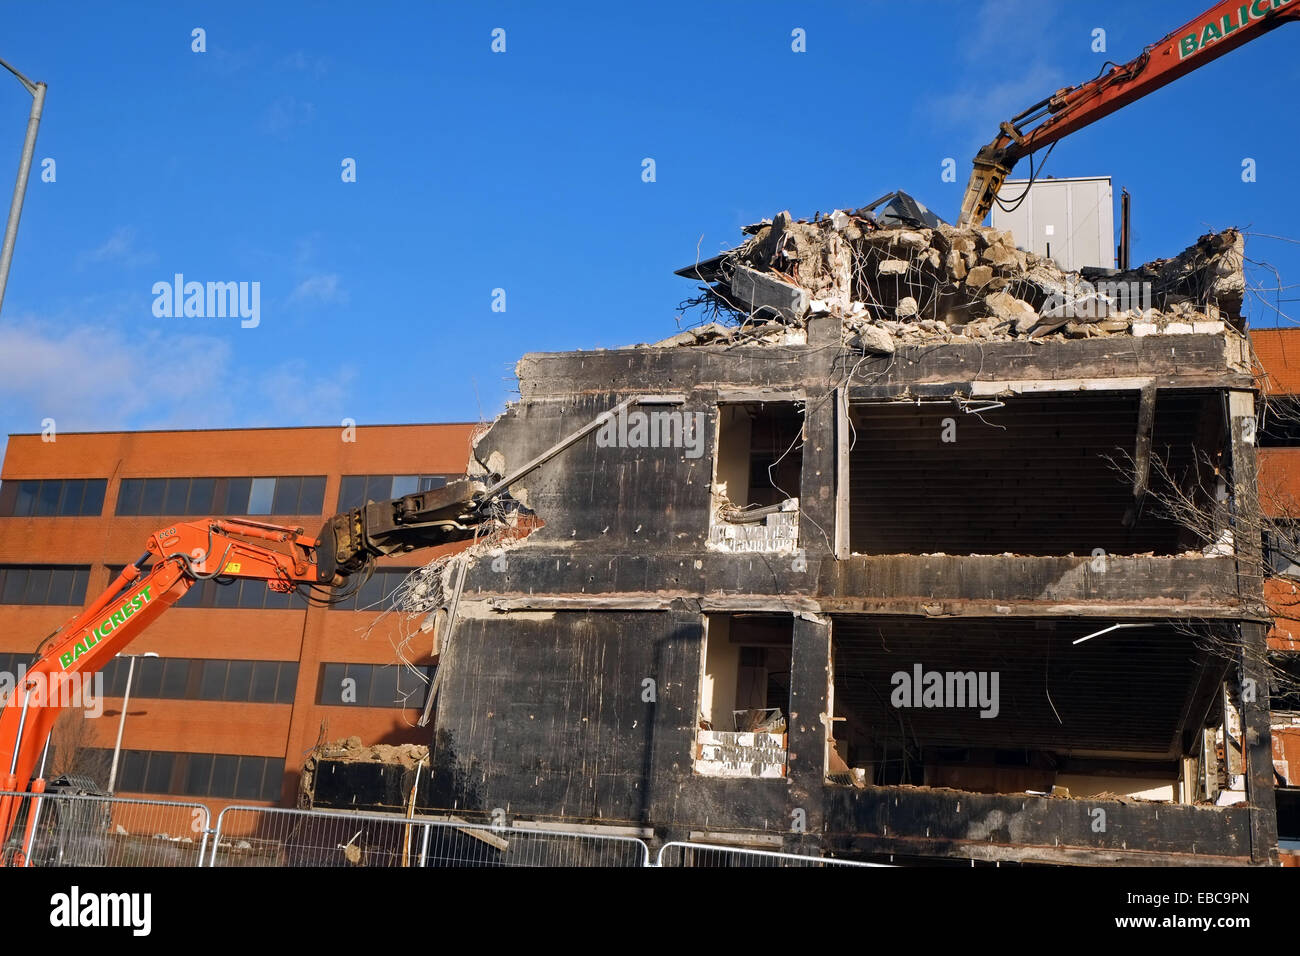 Demolizione - macchine abbattere un edificio vicino all'aeroporto di Heathrow, UK. Foto Stock